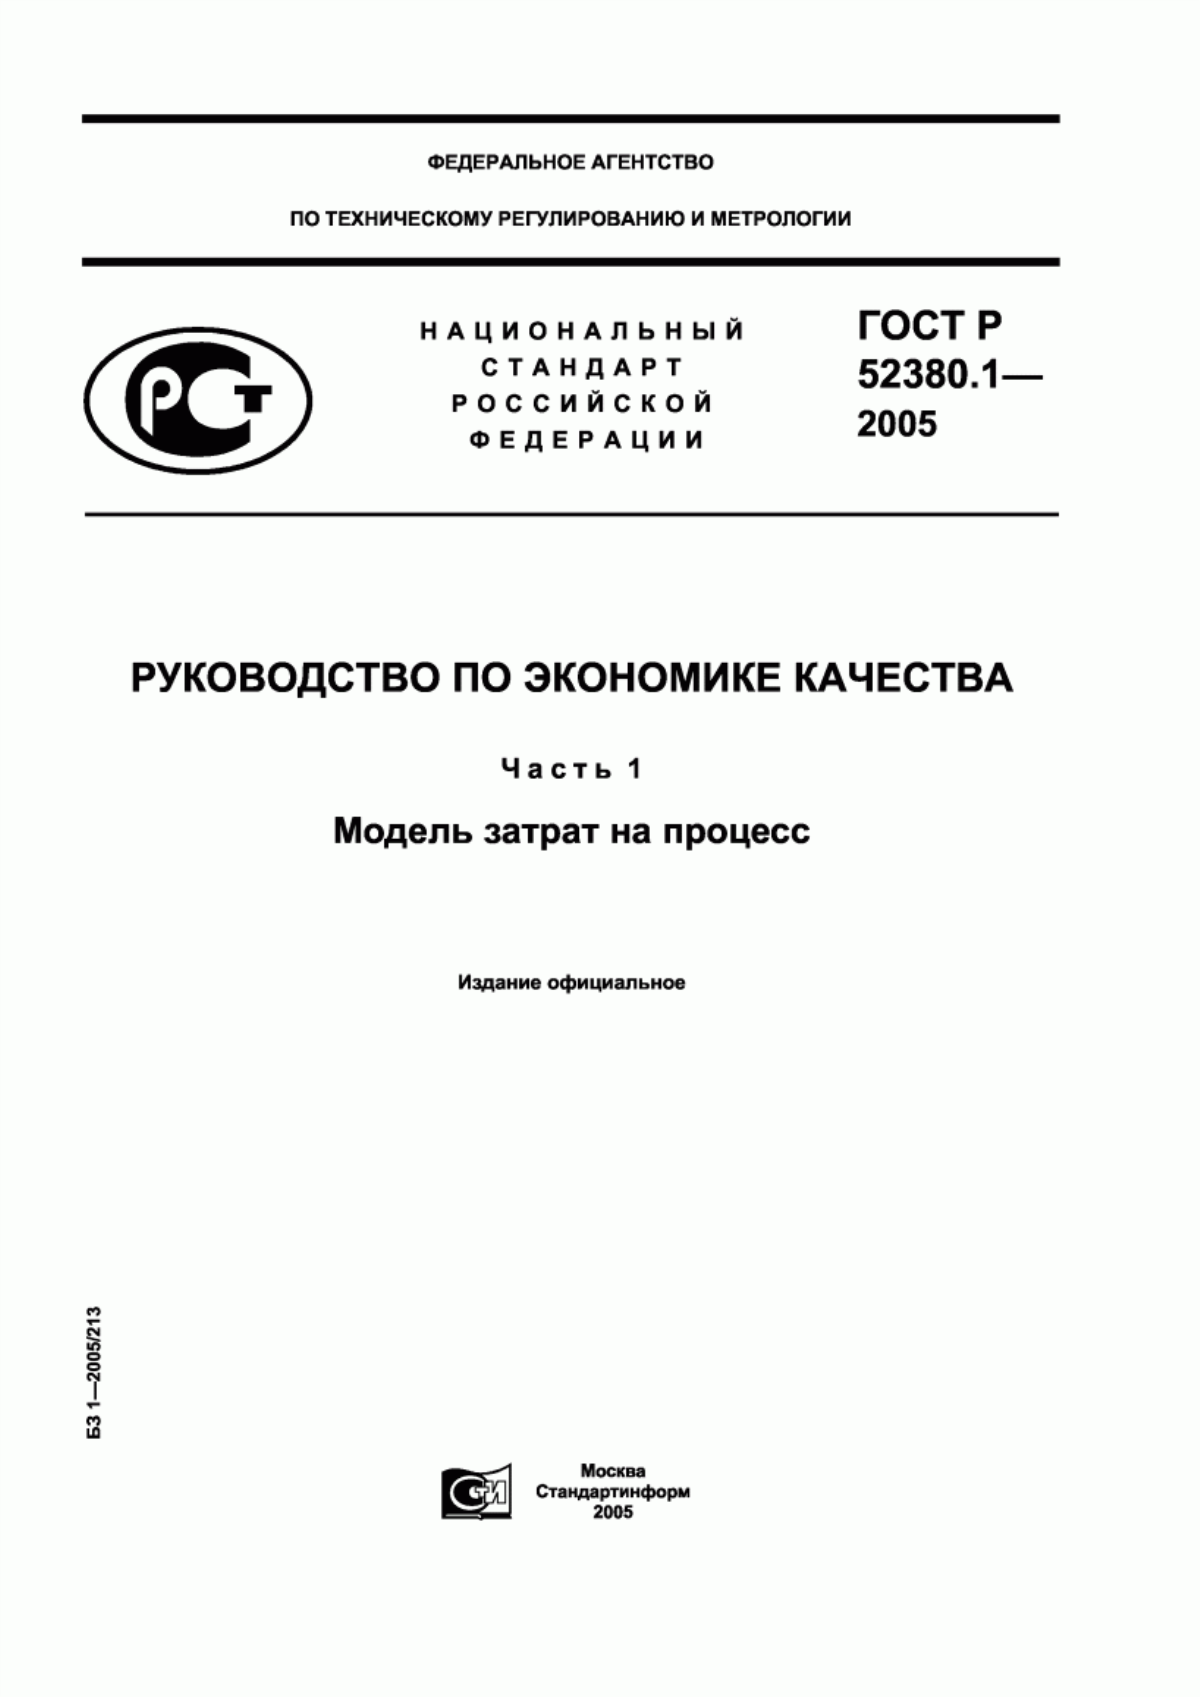 ГОСТ Р 52380.1-2005 Руководство по экономике качества. Часть 1. Модель затрат на процесс